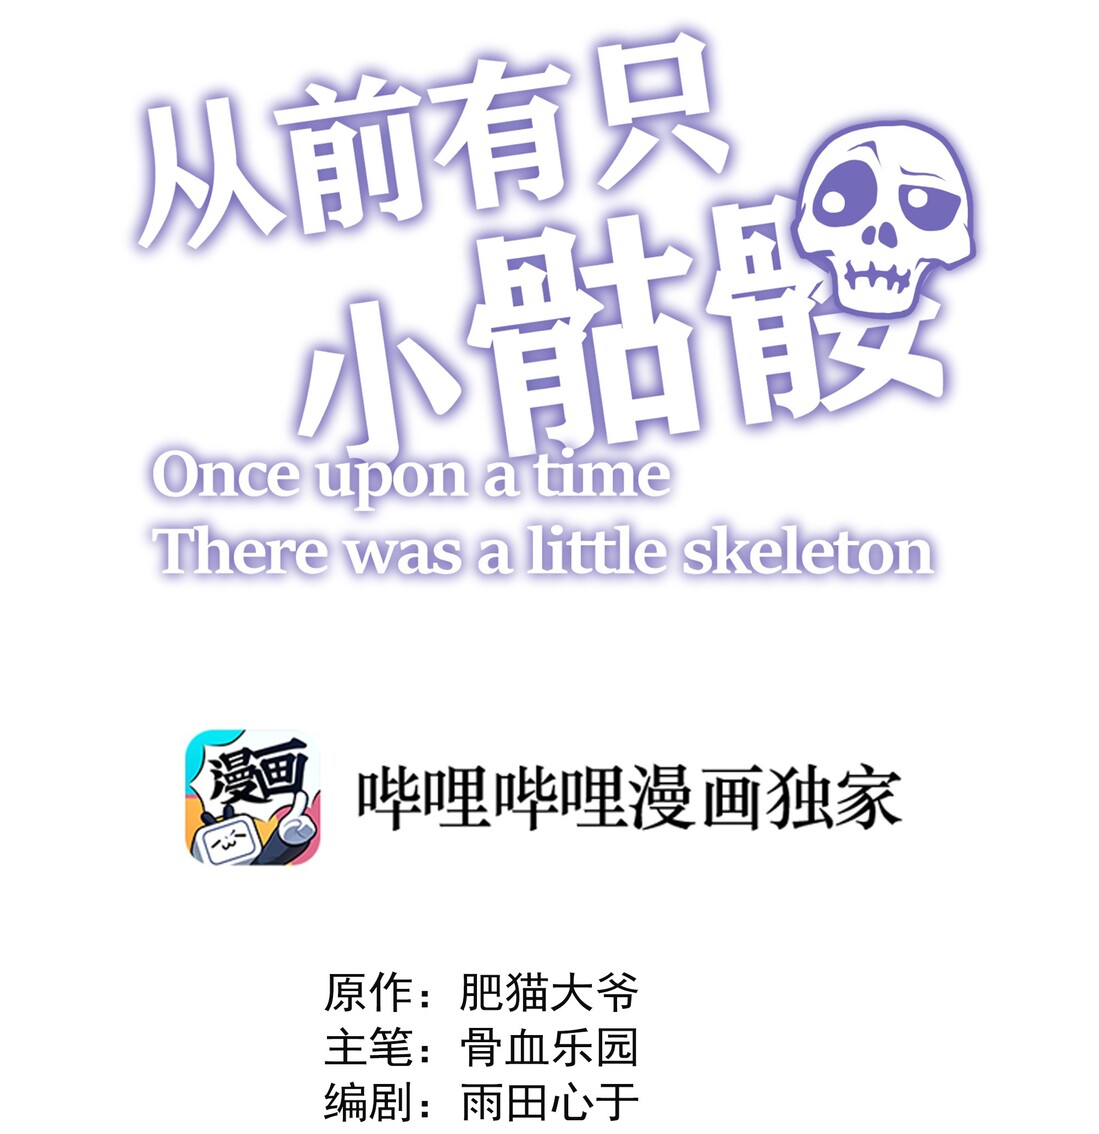 Little Skeleton Ch. 0 Teaser